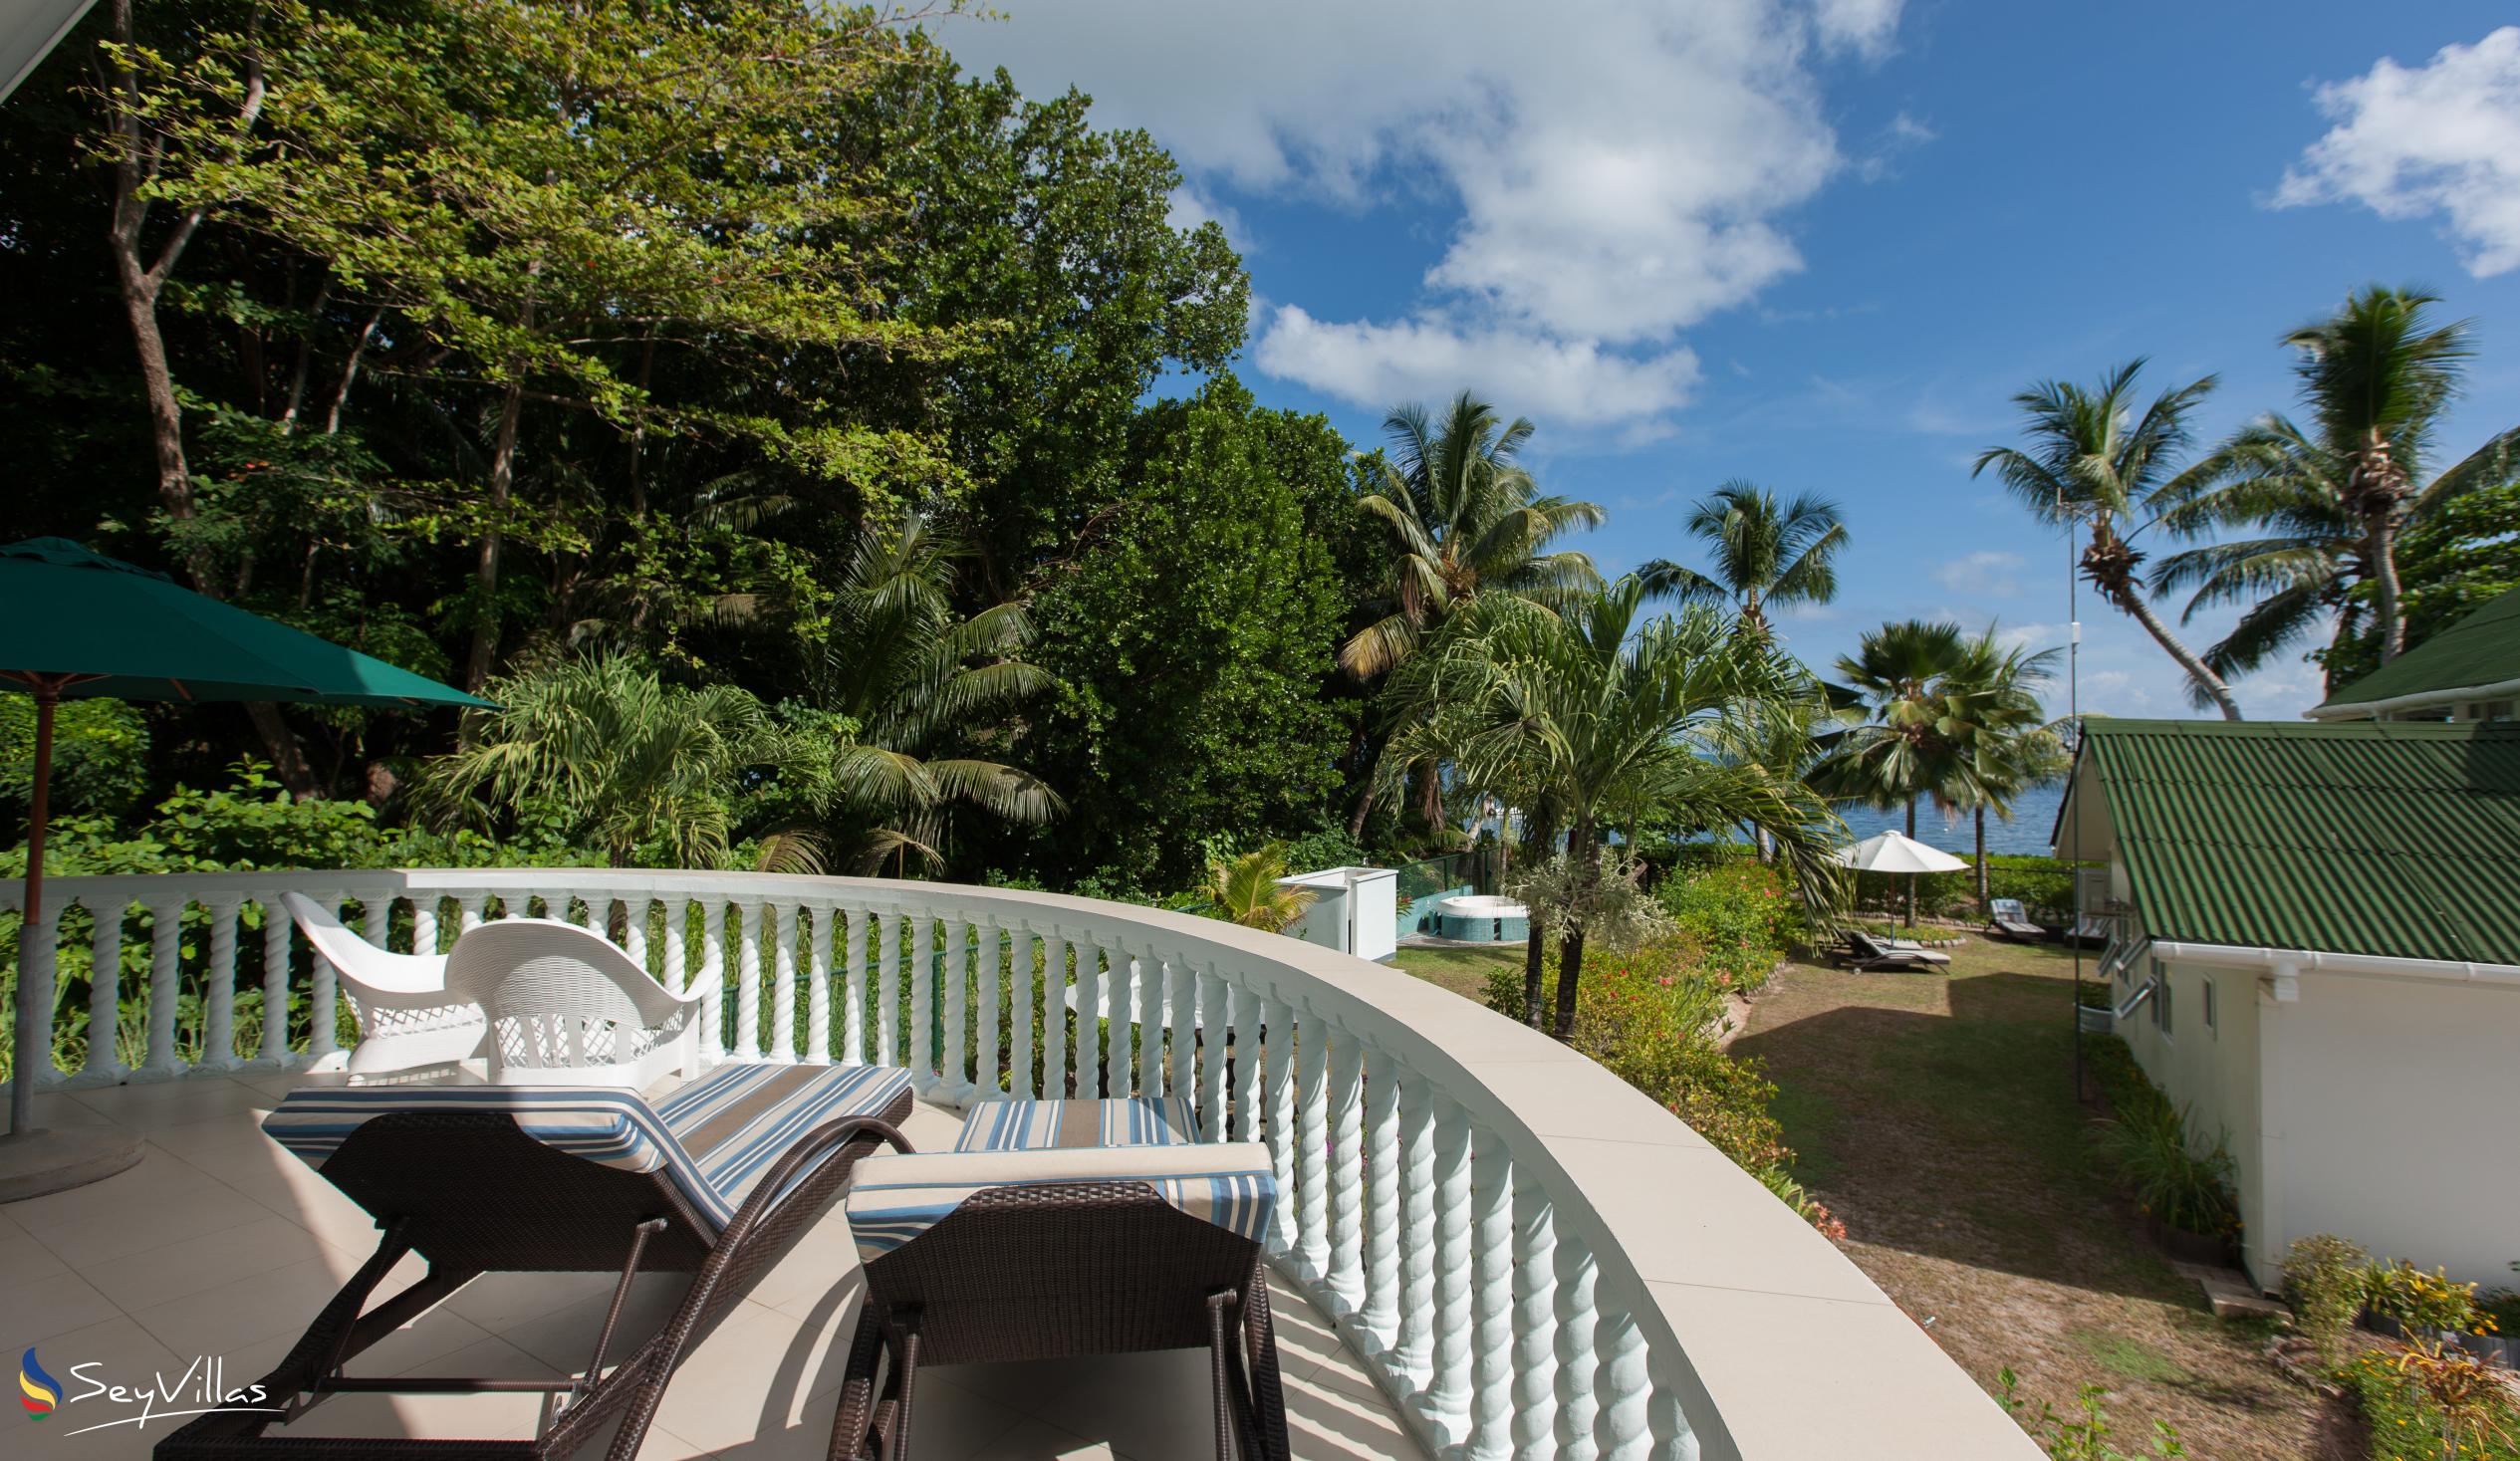 Foto 12: Ocean Villa - Aussenbereich - Praslin (Seychellen)